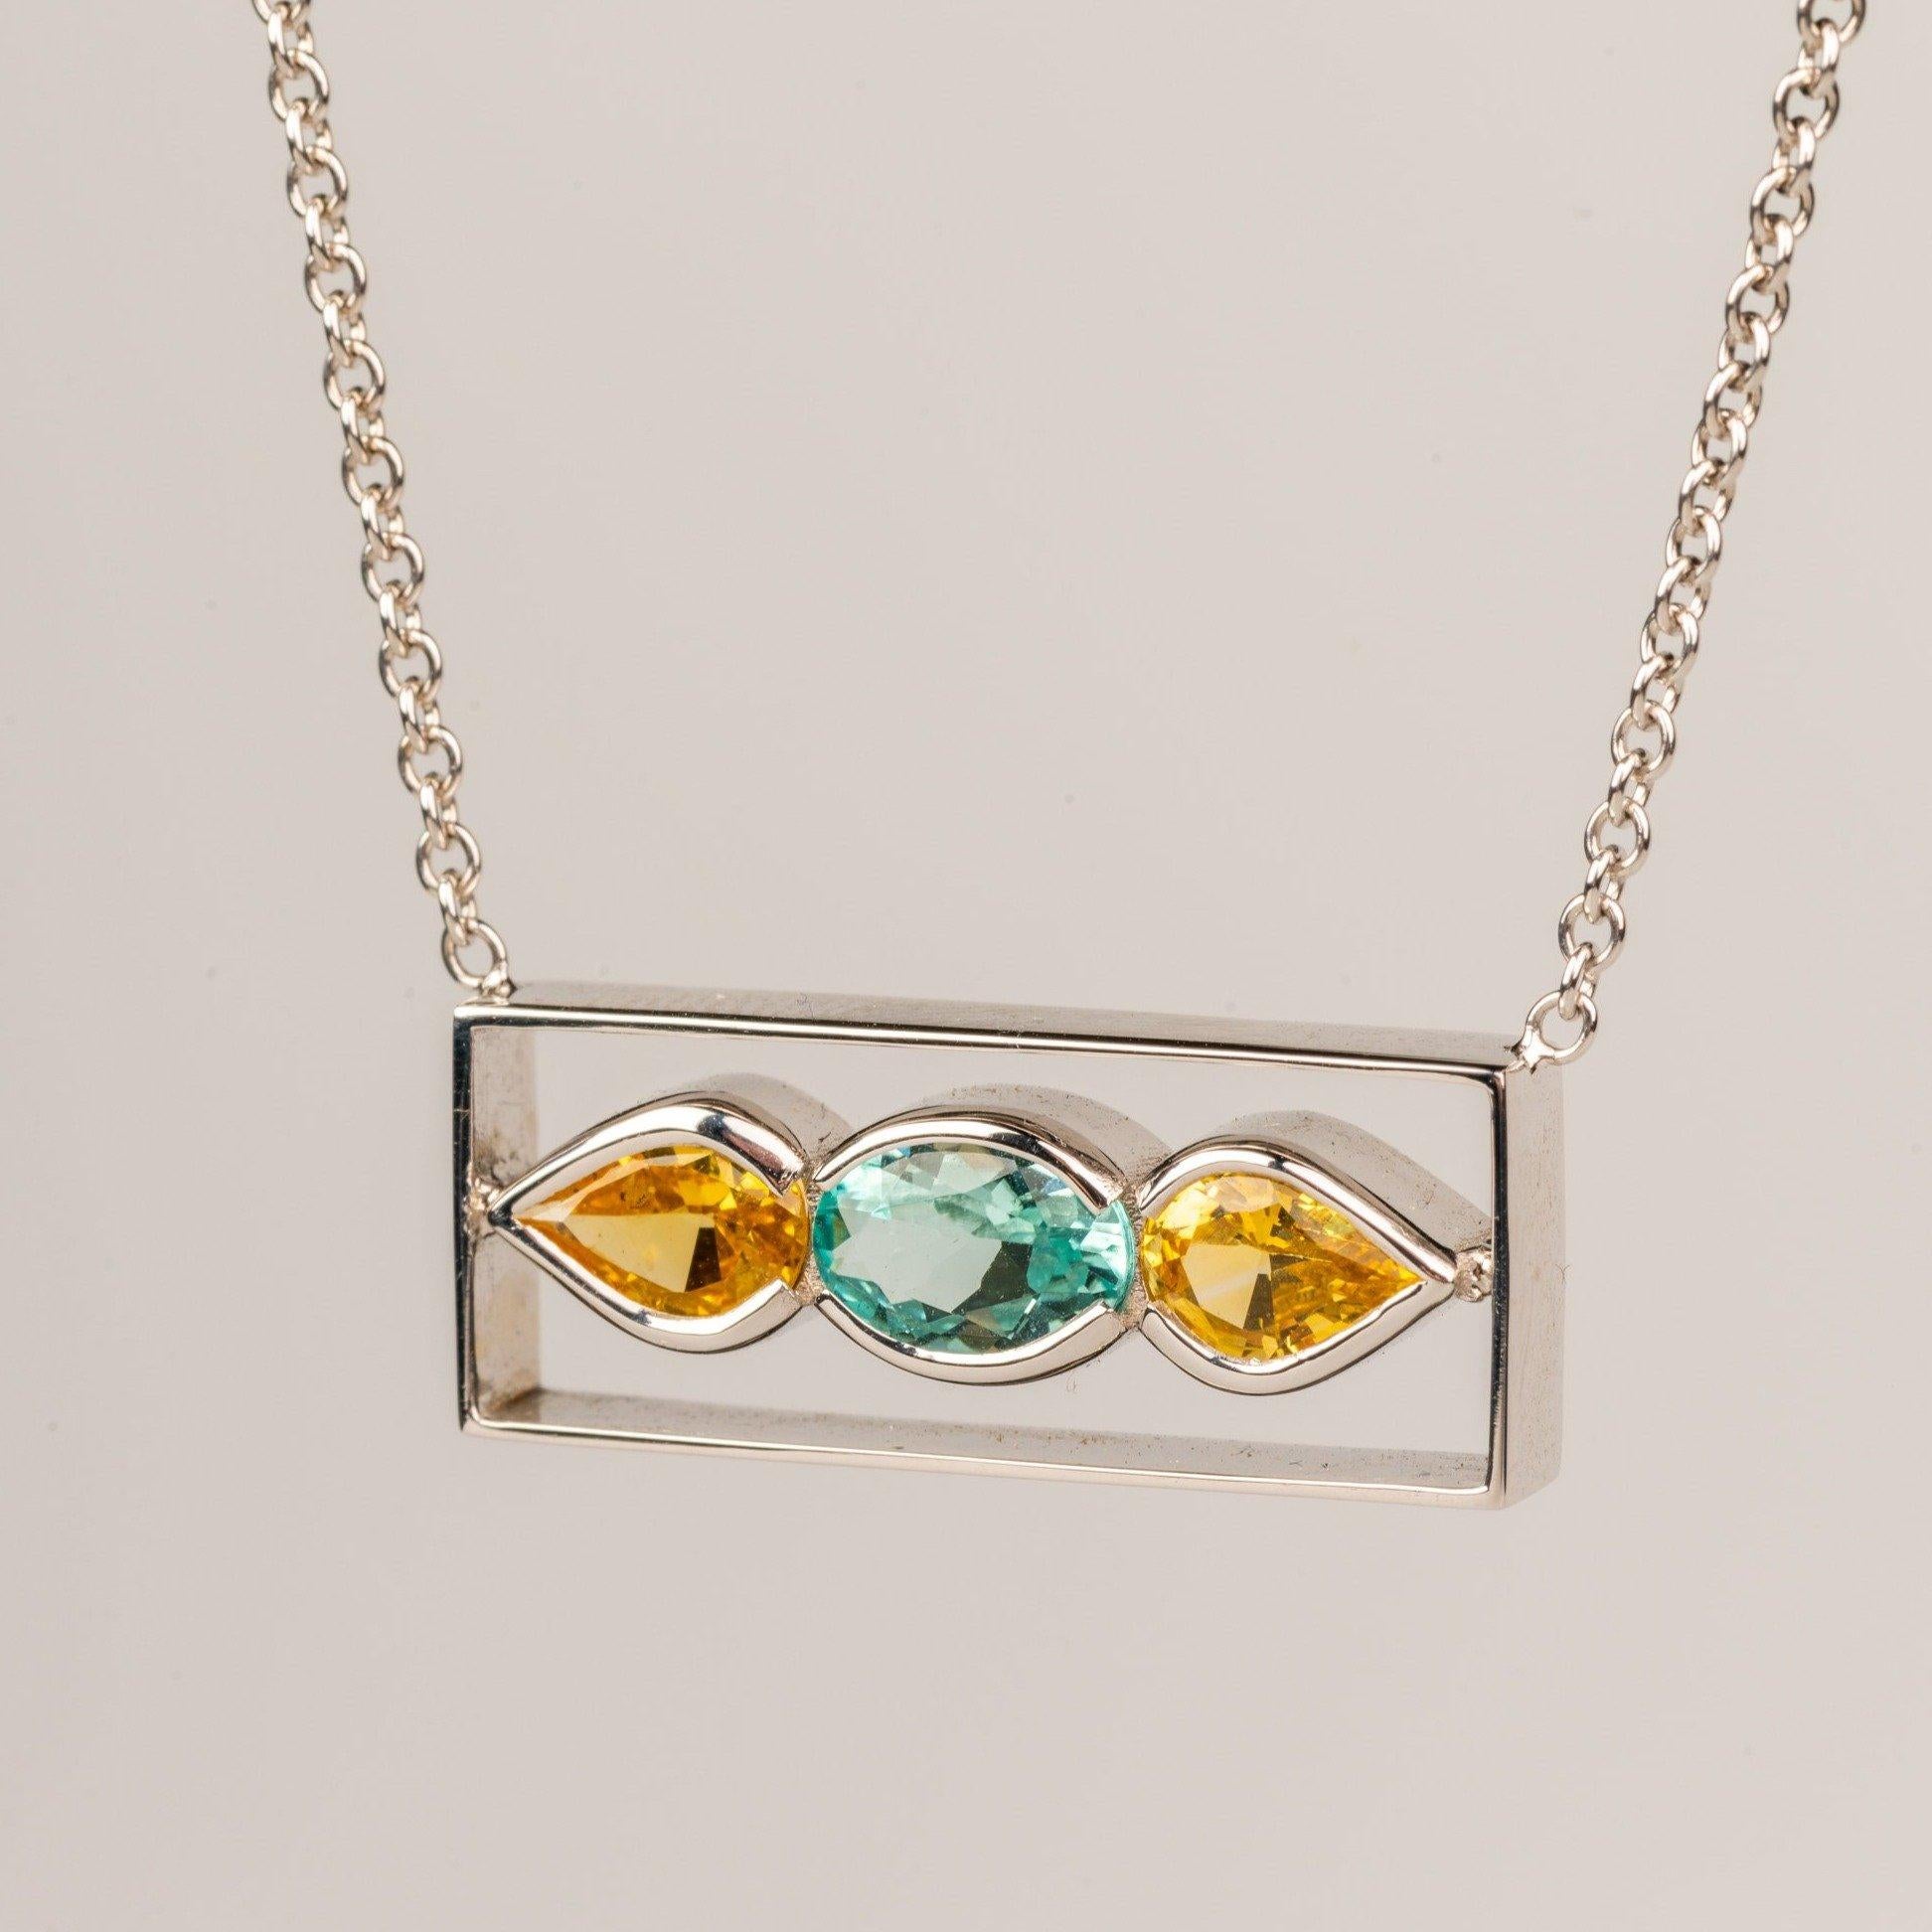 Collier en or blanc 18k avec une tourmaline bleue ovale à facettes de 0,66 carat et deux saphirs jaunes à facettes en forme de poire de 1,12 carat, montés sur une chaîne en or blanc de 16 pouces. Ce collier a été réalisé et conçu par Sydney Strong.